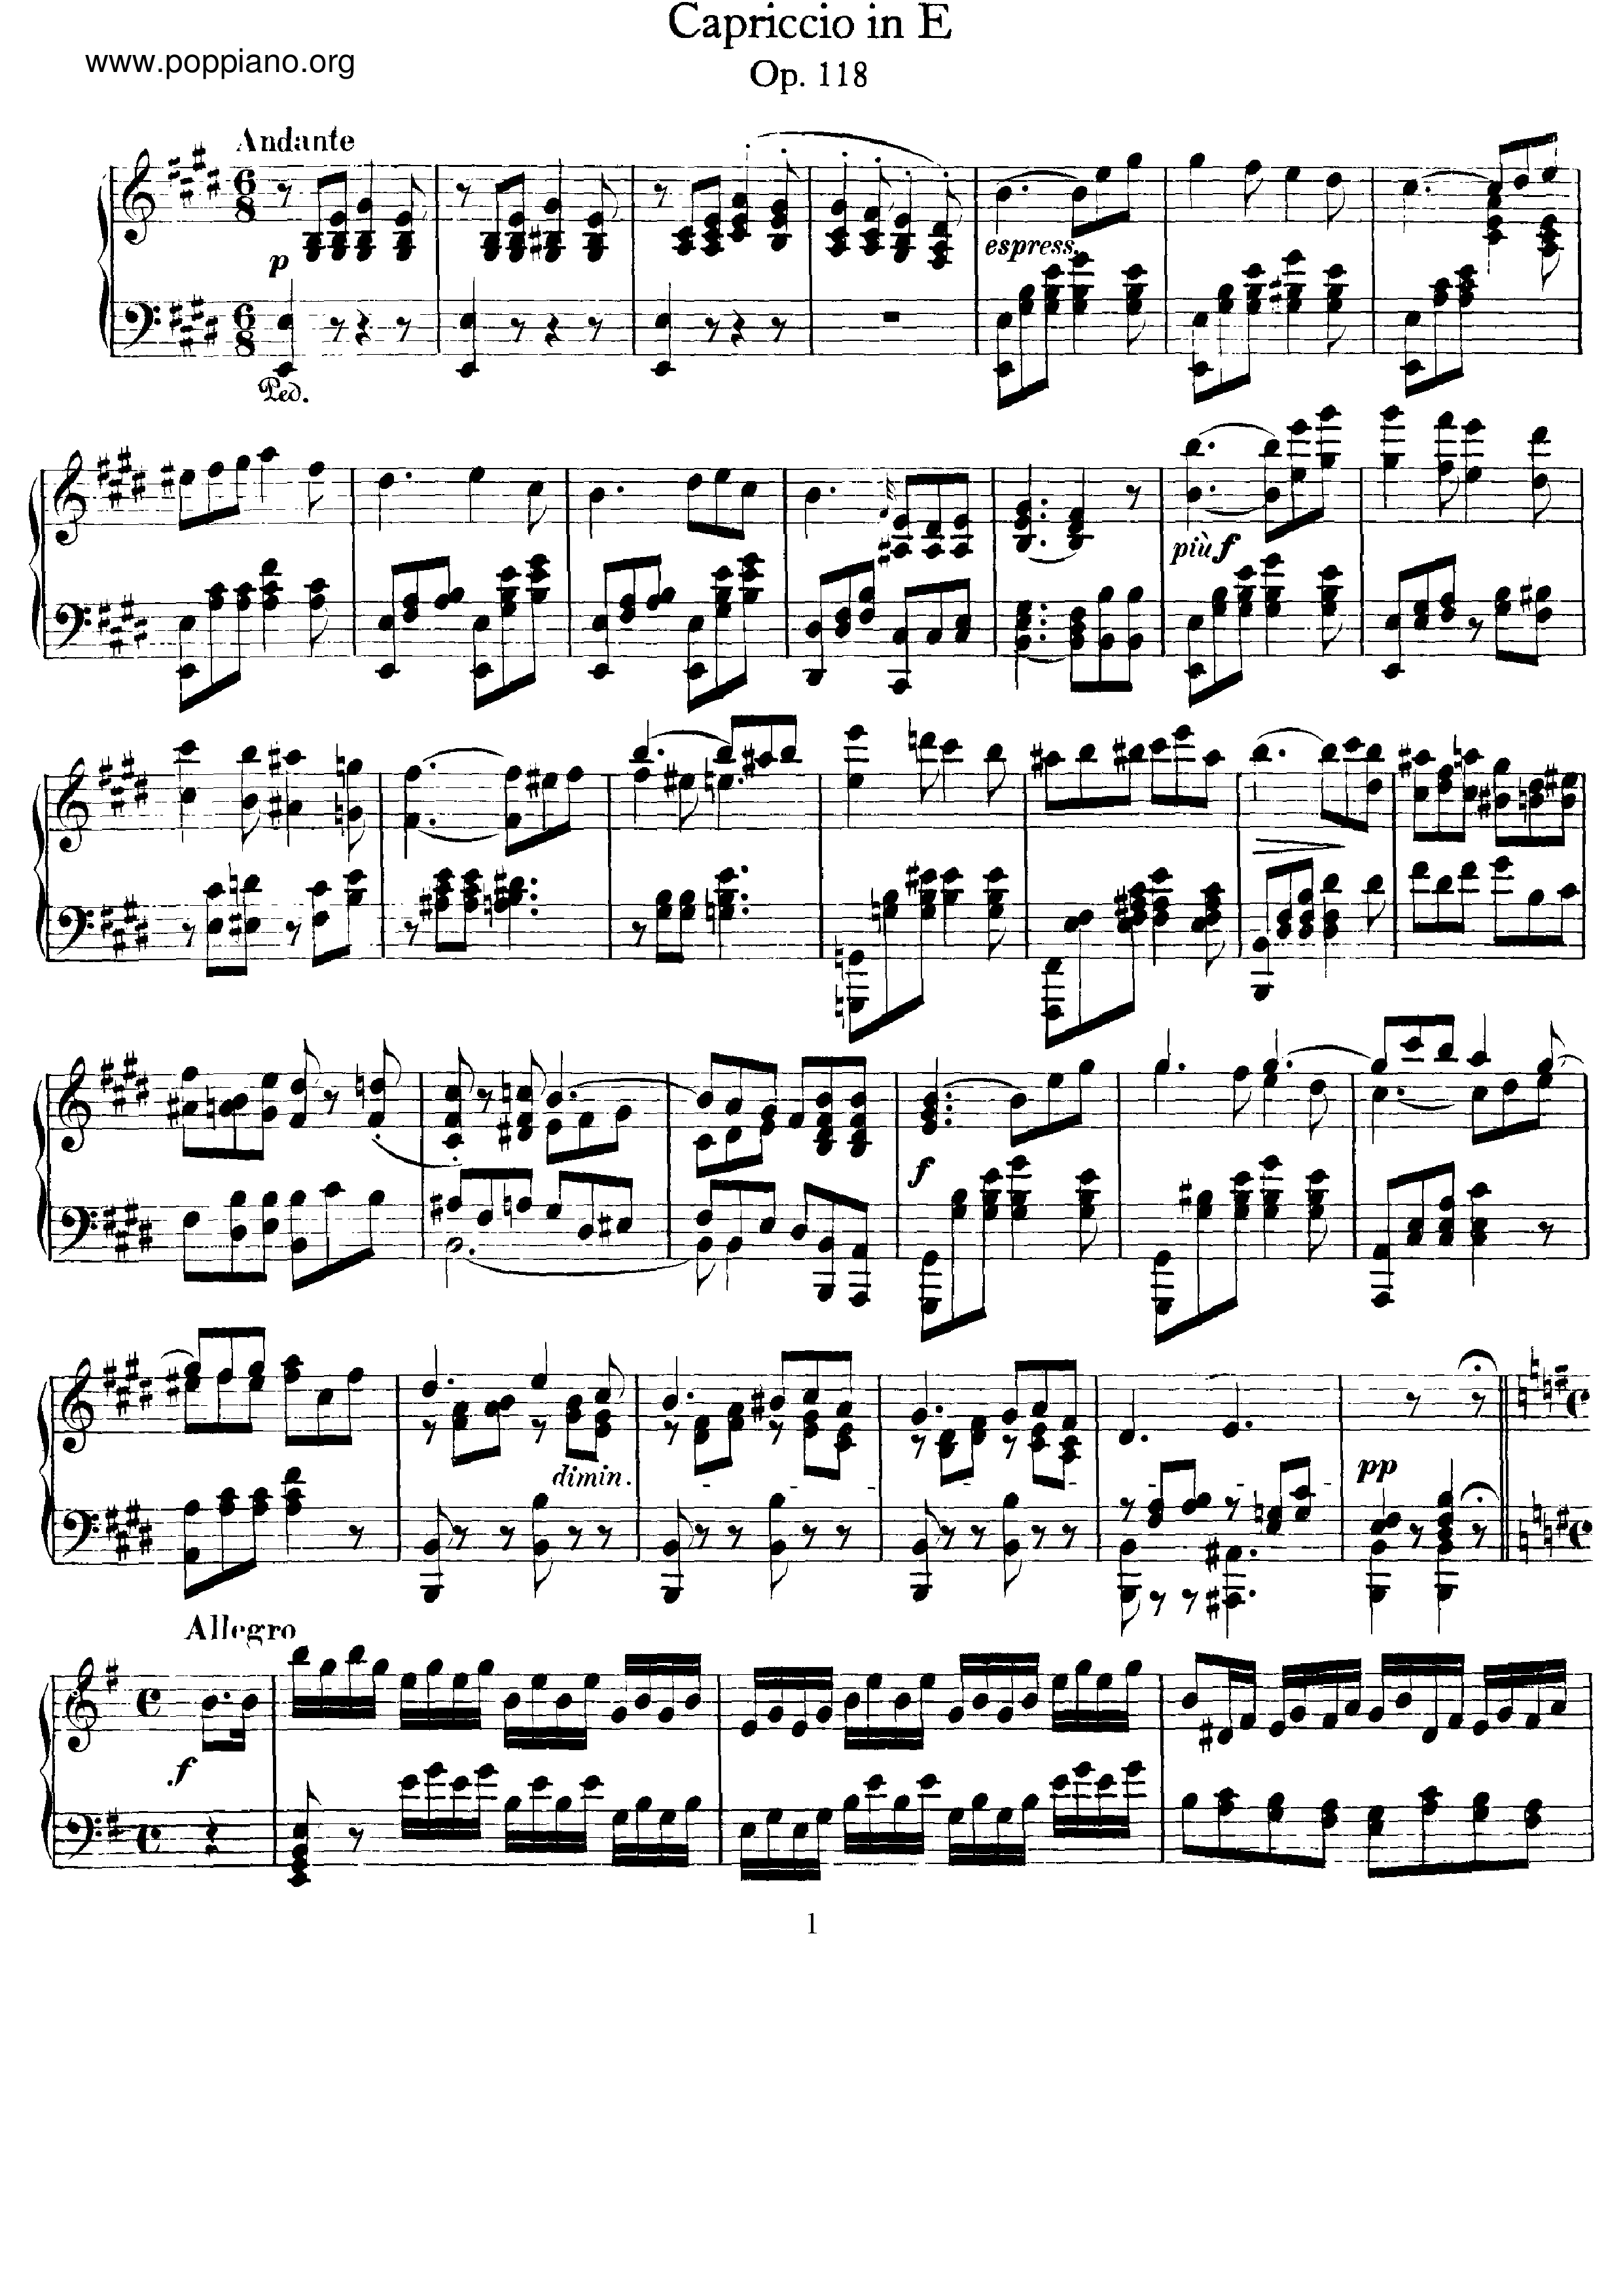 Capriccio, Op.118 Score